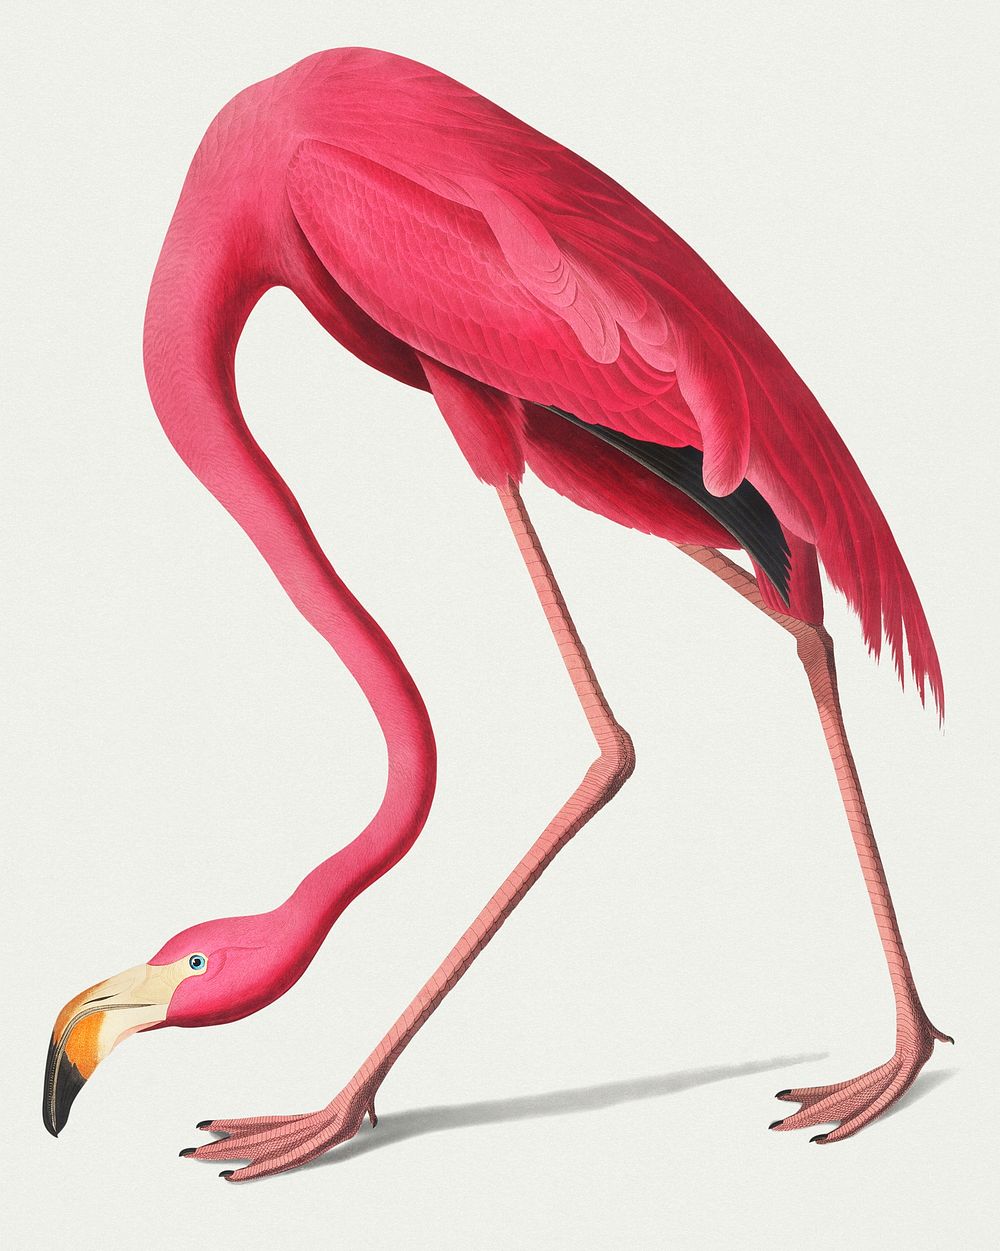 Vintage Illustration of Pink Flamingo